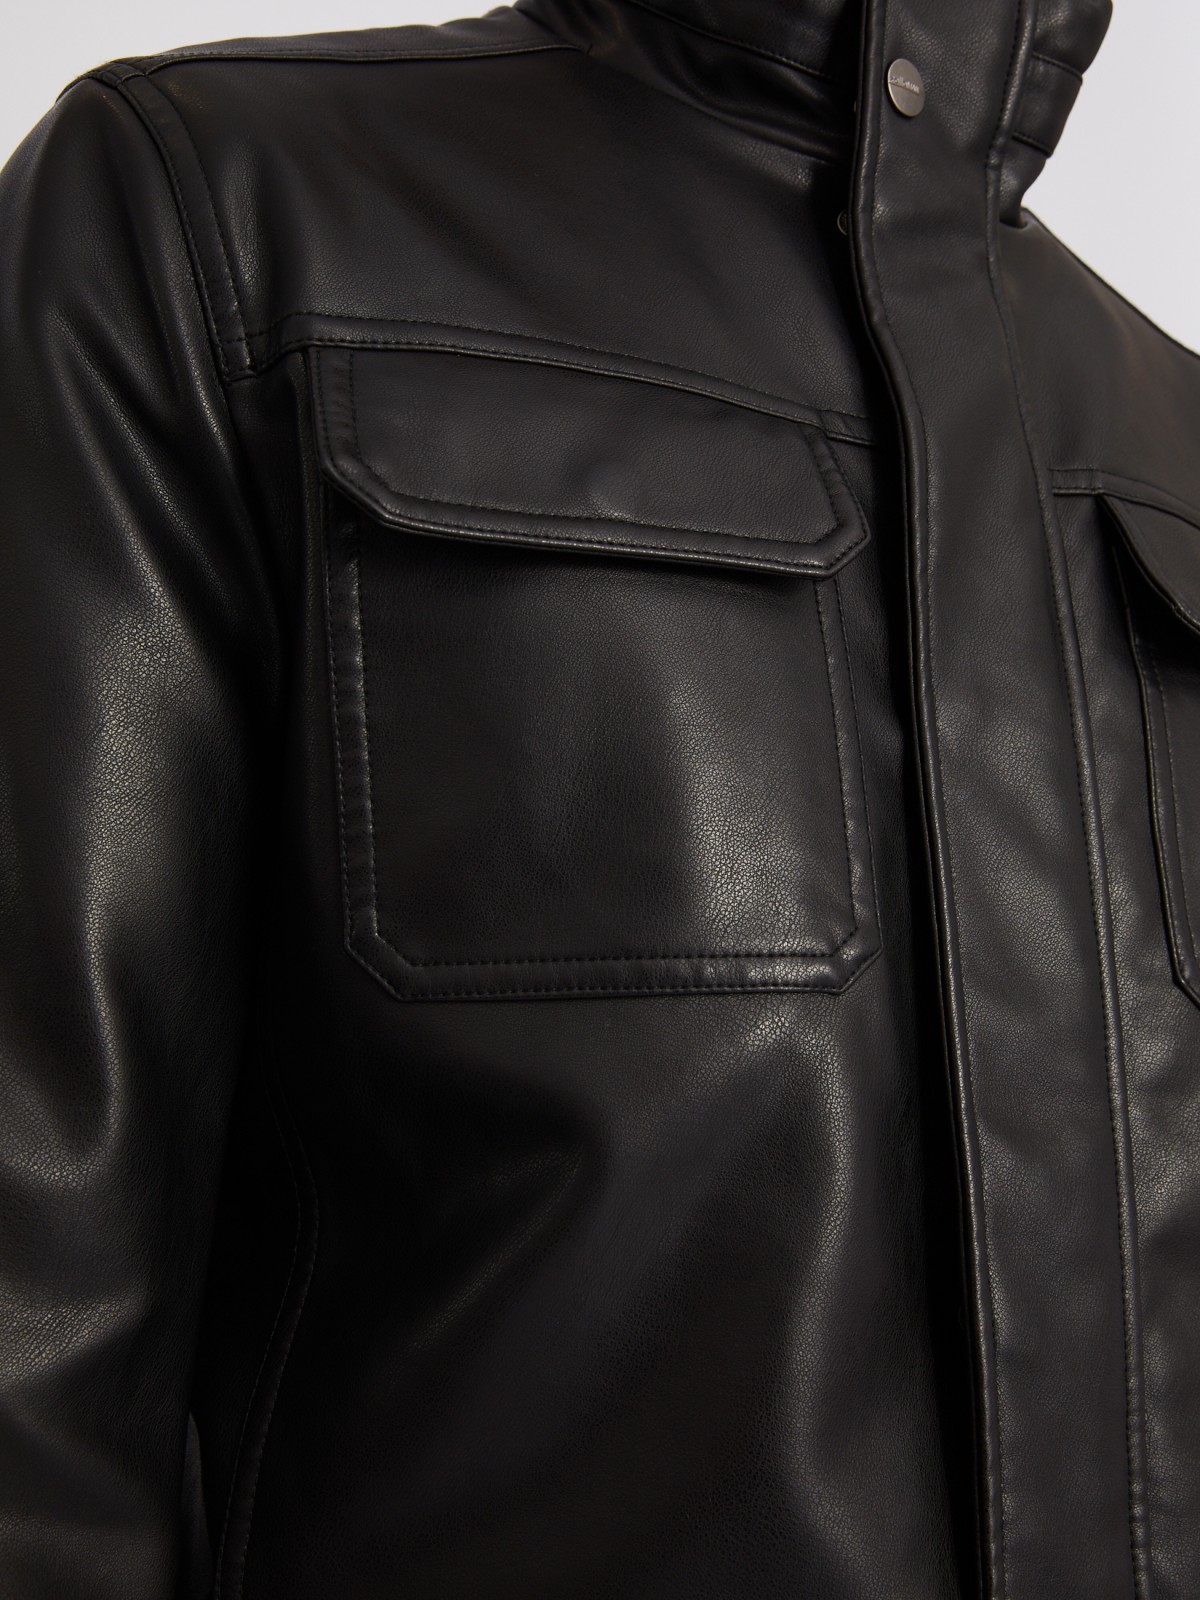 Утеплённая куртка из экокожи на синтепоне с воротником-стойкой zolla 013335102044, цвет черный, размер XXXL - фото 4